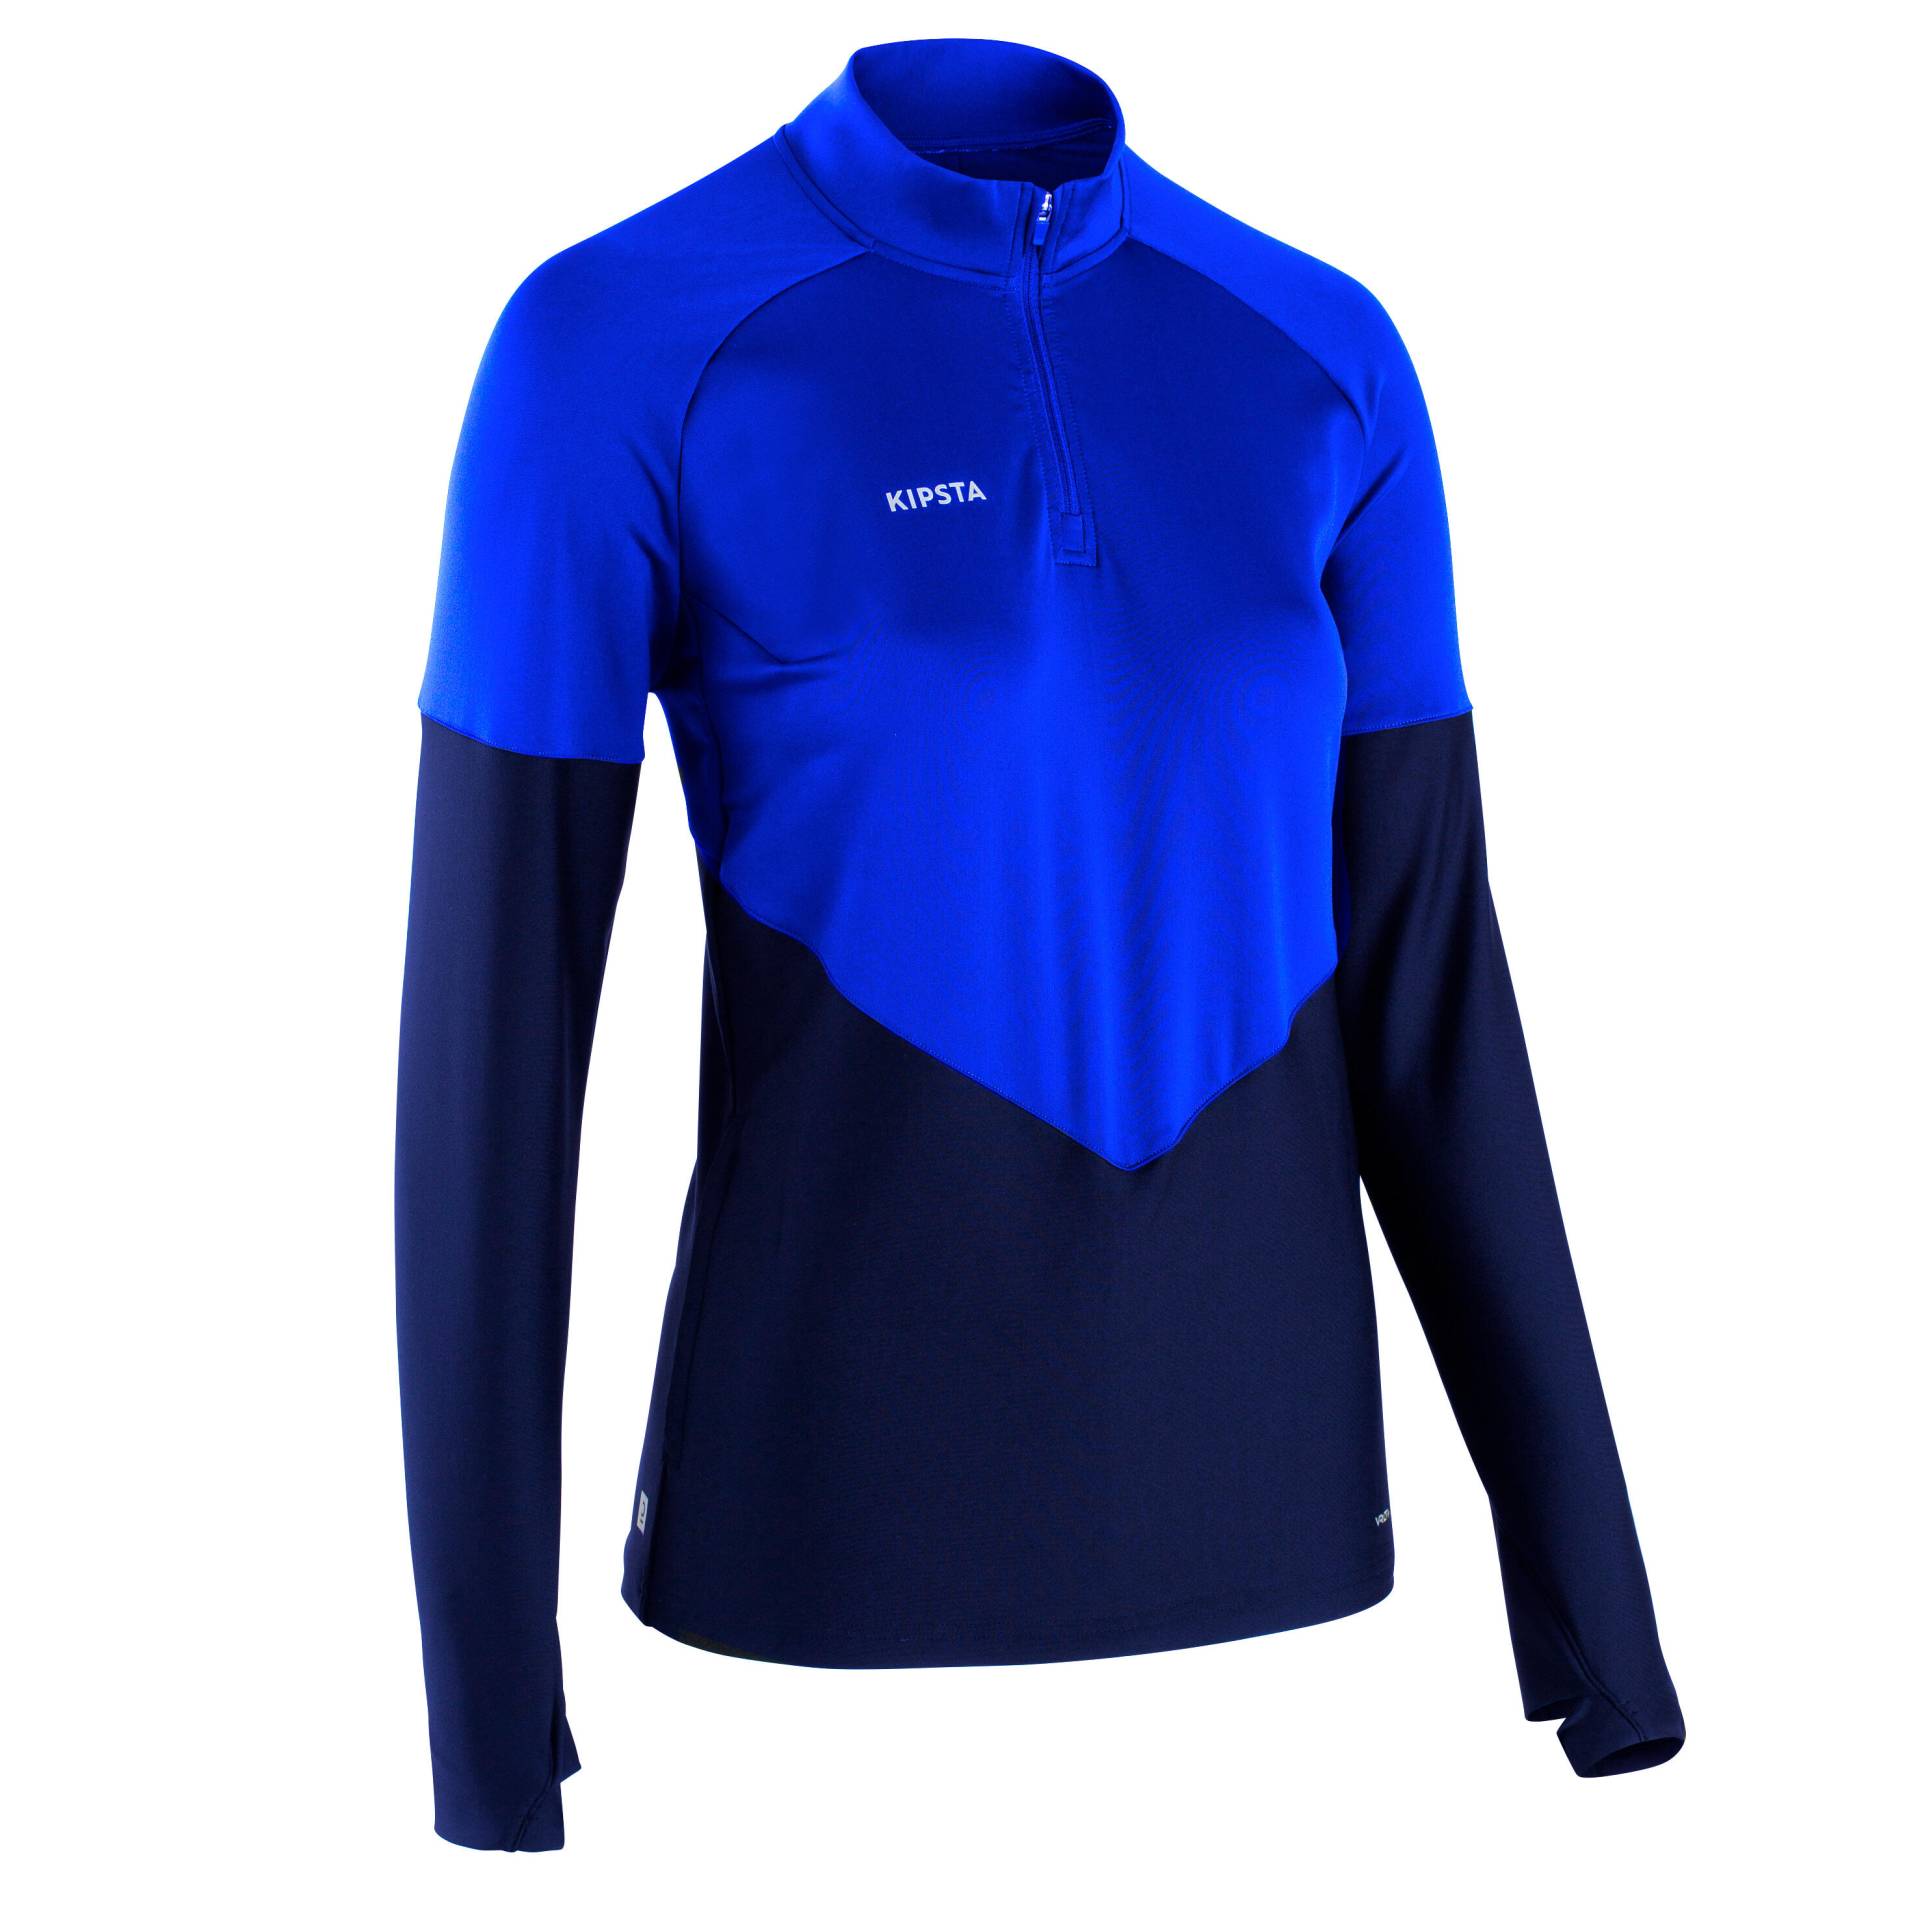 Damen Fussball Sweatshirt - Viralto blau von KIPSTA